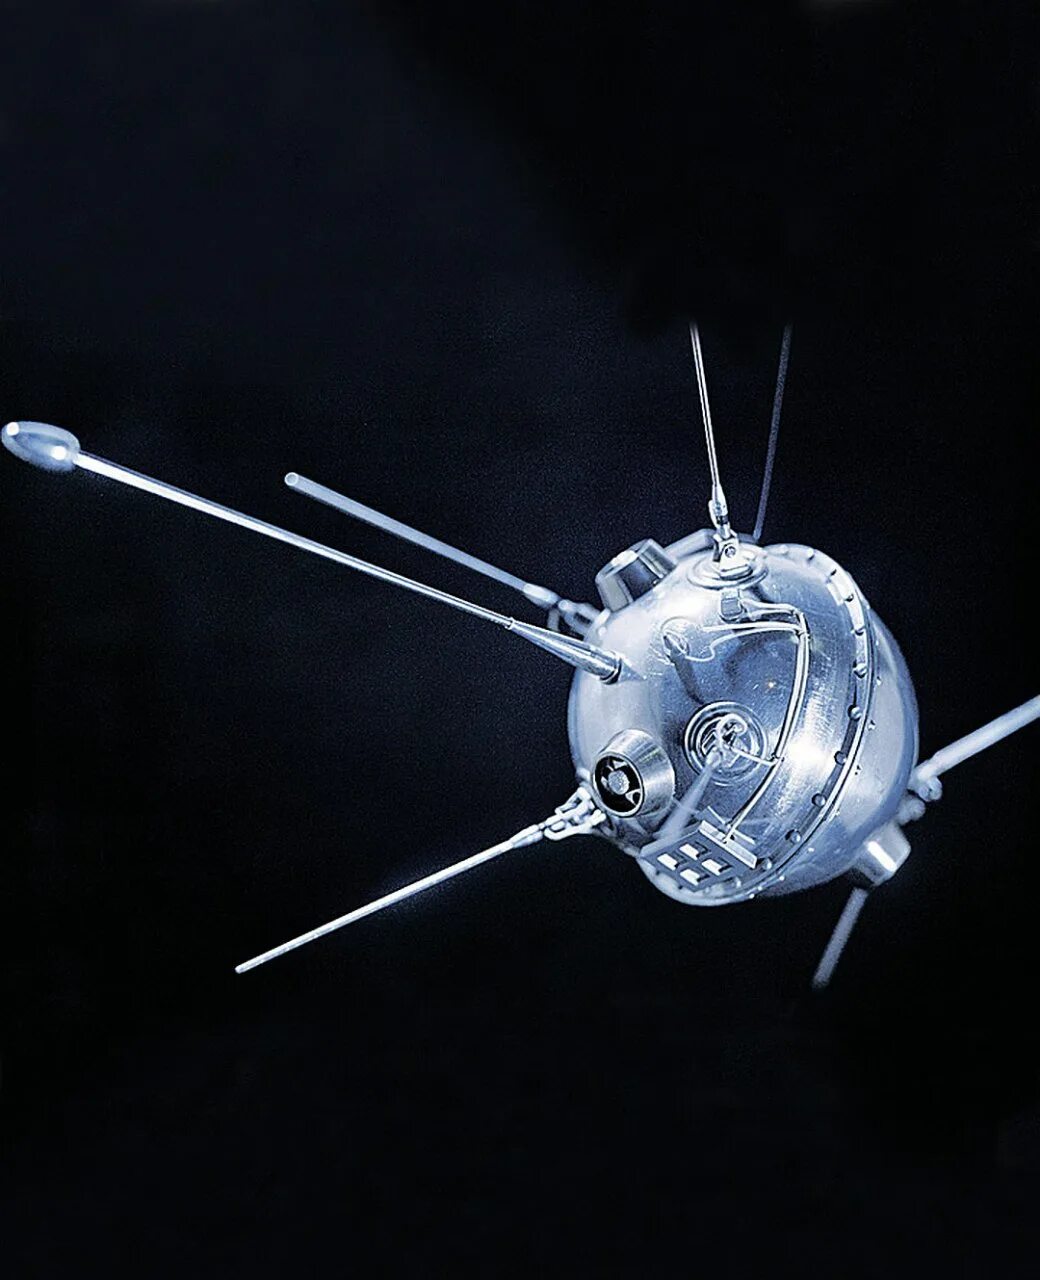 Первый советский космический аппарат. Луна-2 автоматическая межпланетная станция. Луна-1 автоматическая межпланетная станция. Луна-11 автоматическая межпланетная станция. Первый космический Спутник.